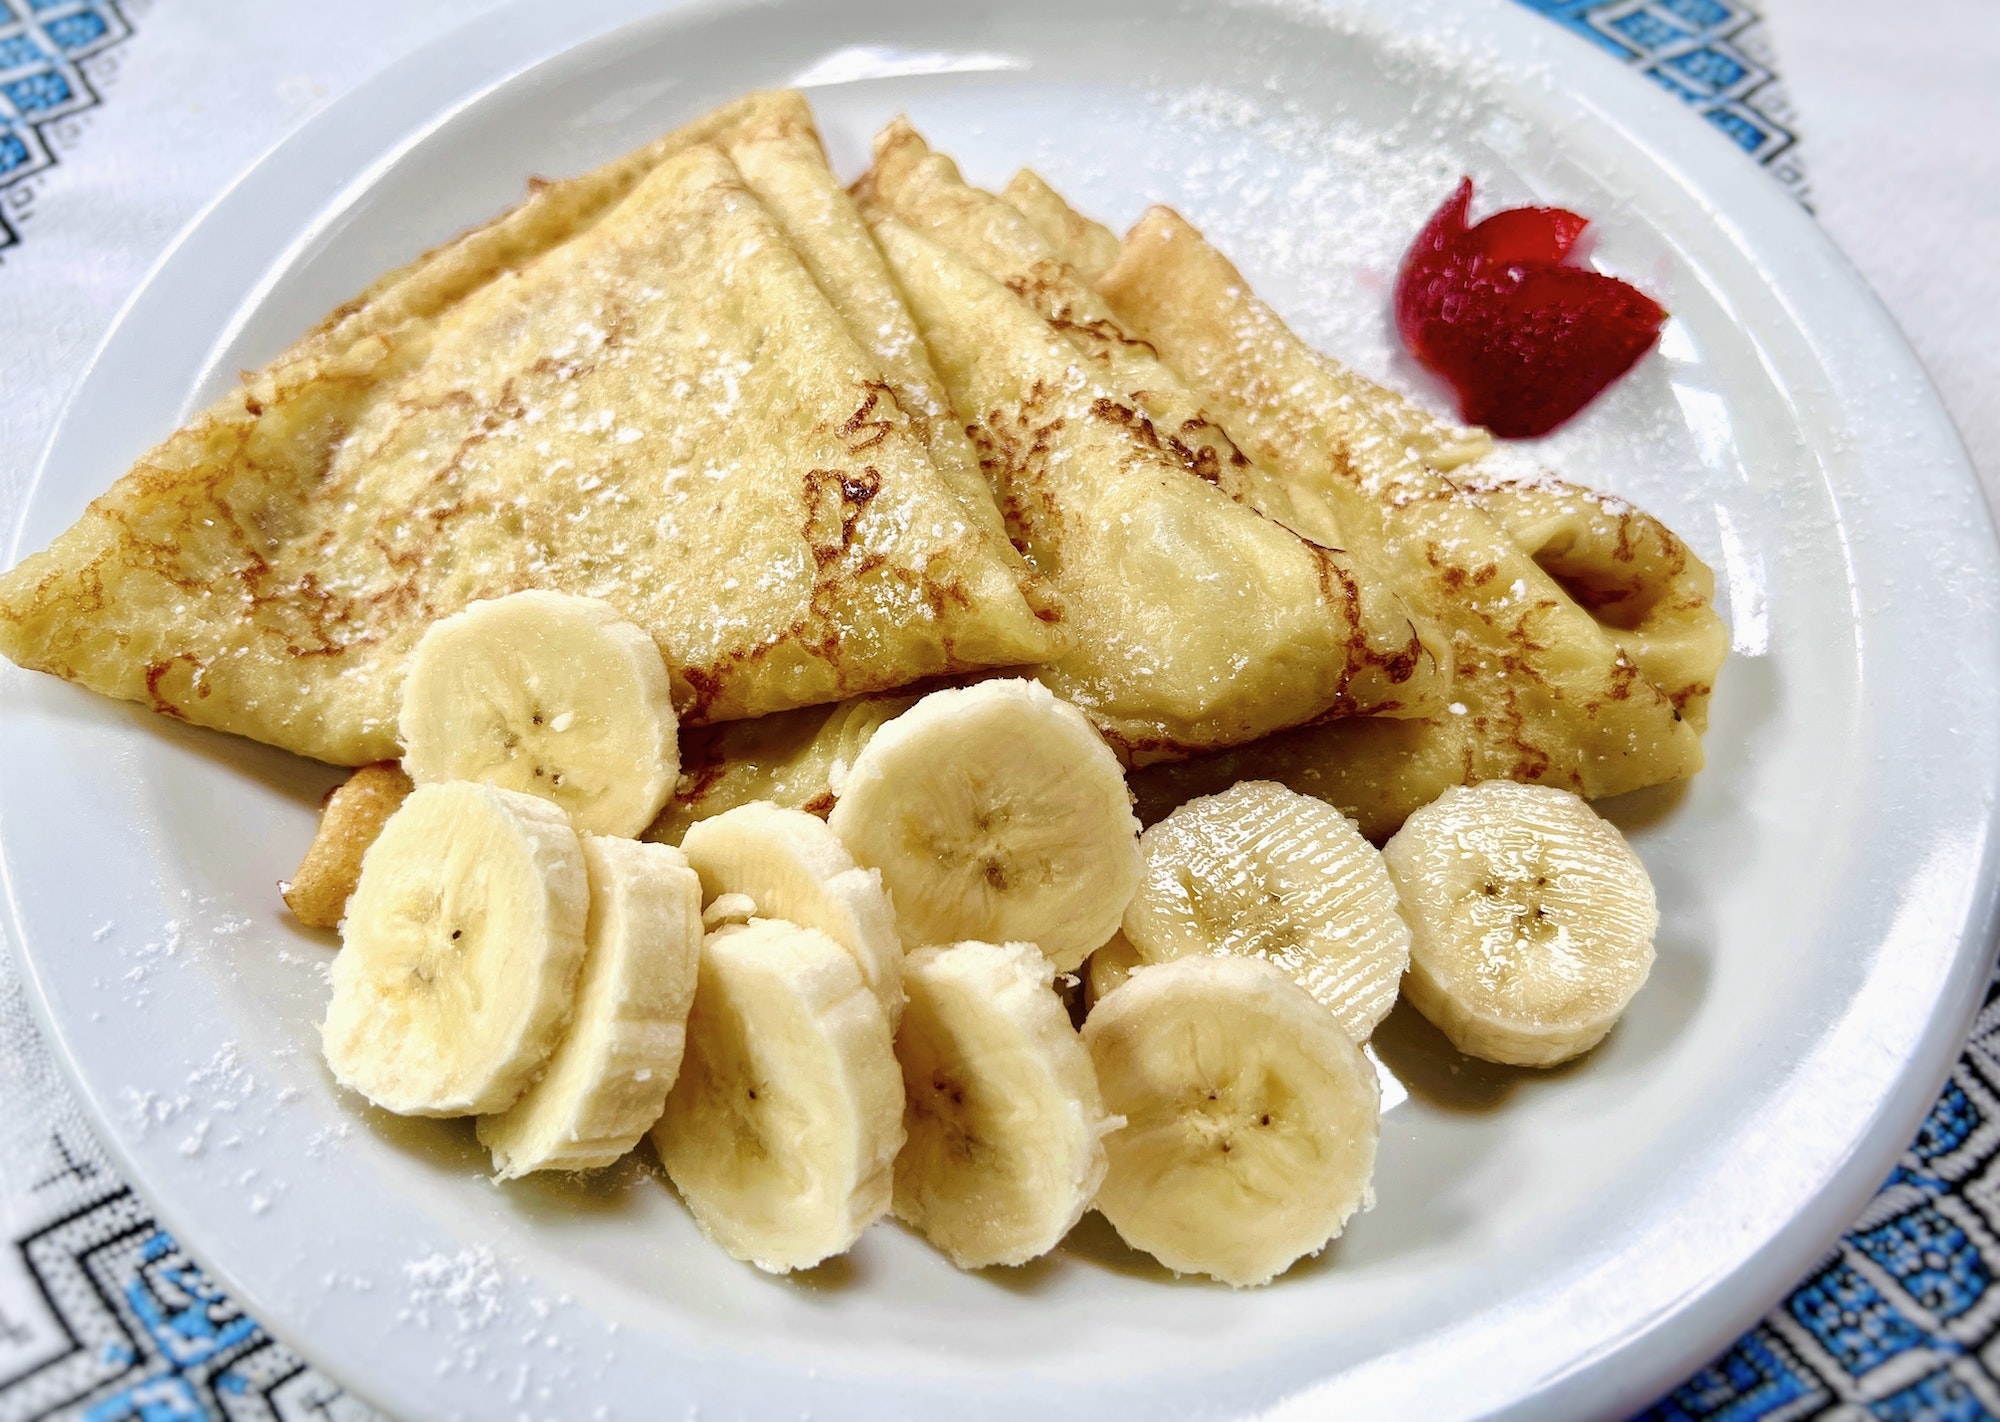 Ukrainian pancakes with banana and strawberries. Blini